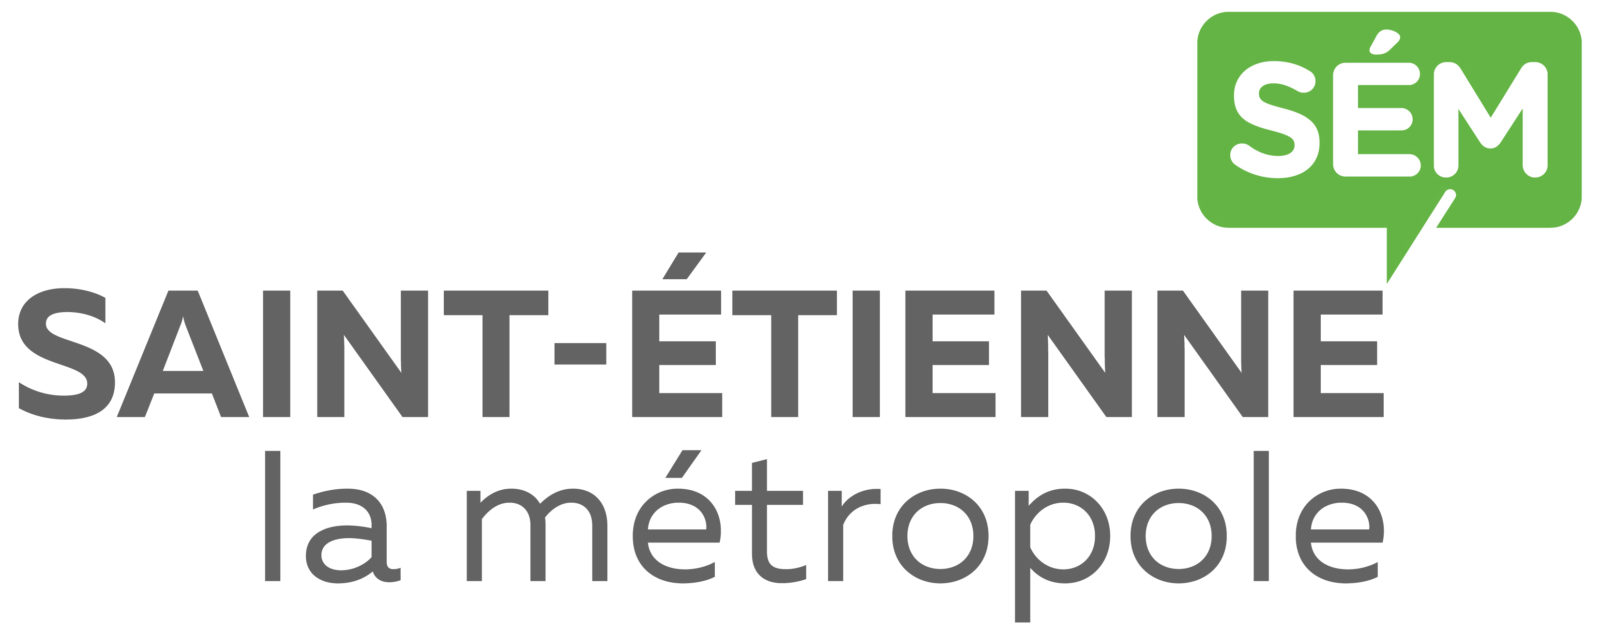 Lignes scolaires de Saint-Etienne Métropole